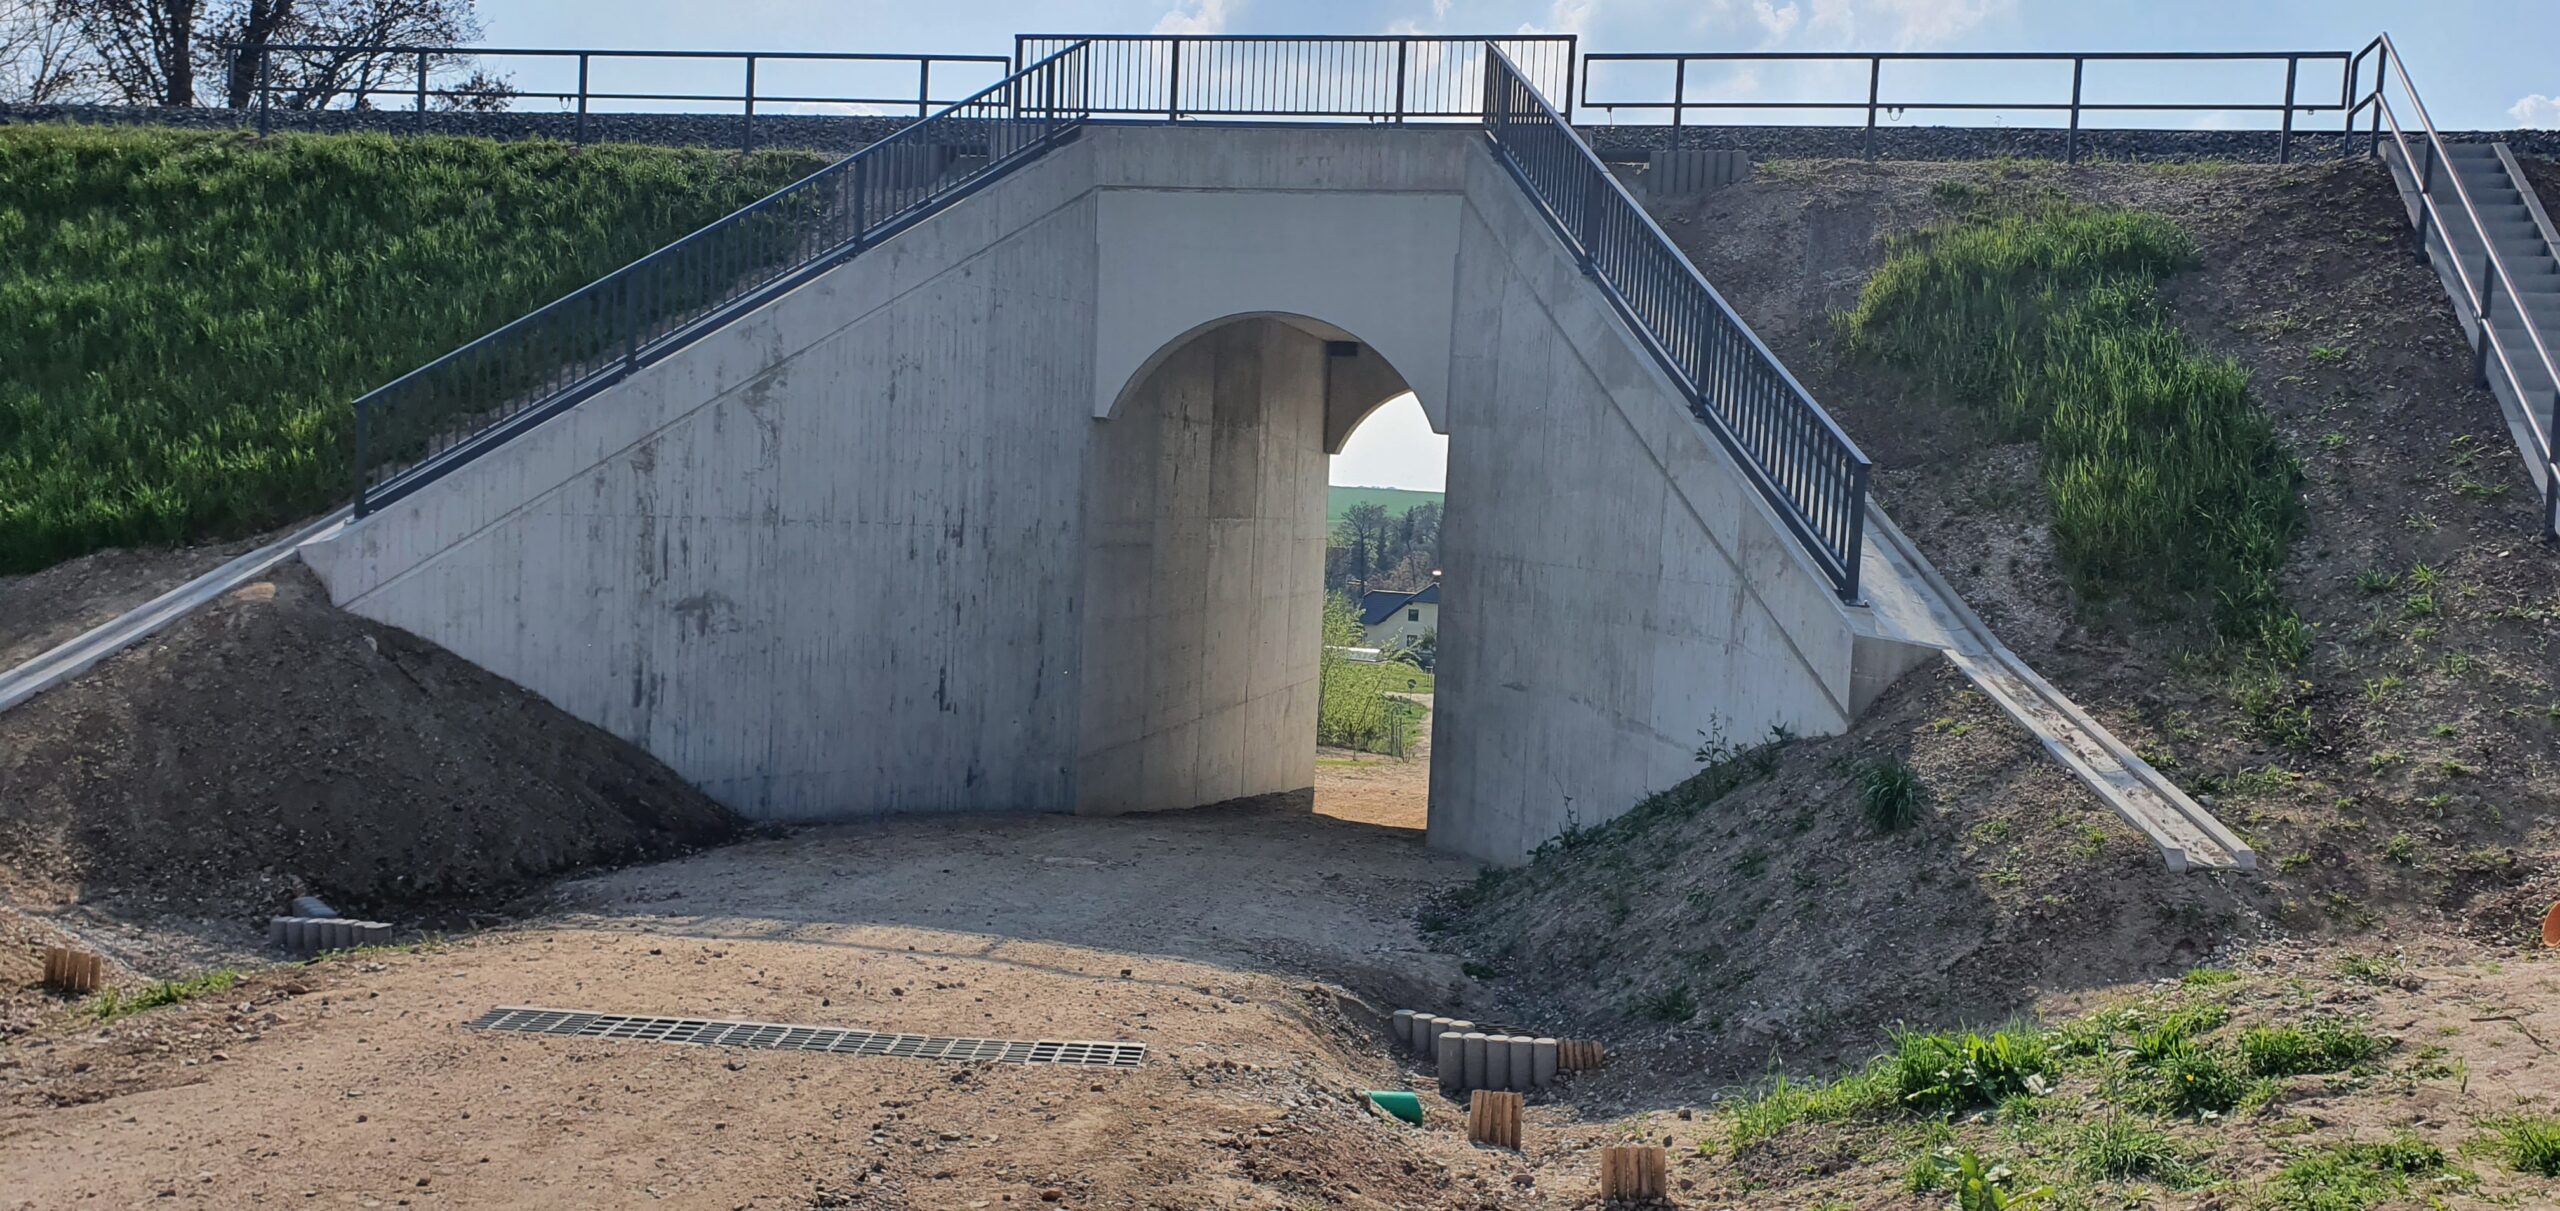 Die neue Brücke durch den hohen Bahndamm ist abgeschlossen. Die Durchfahrtshöhe hat sich deutlich vergrößert. und Bahndamm sind mit Geländern gesichert. Eine Treppe führt auf den Bahndamm hinauf.